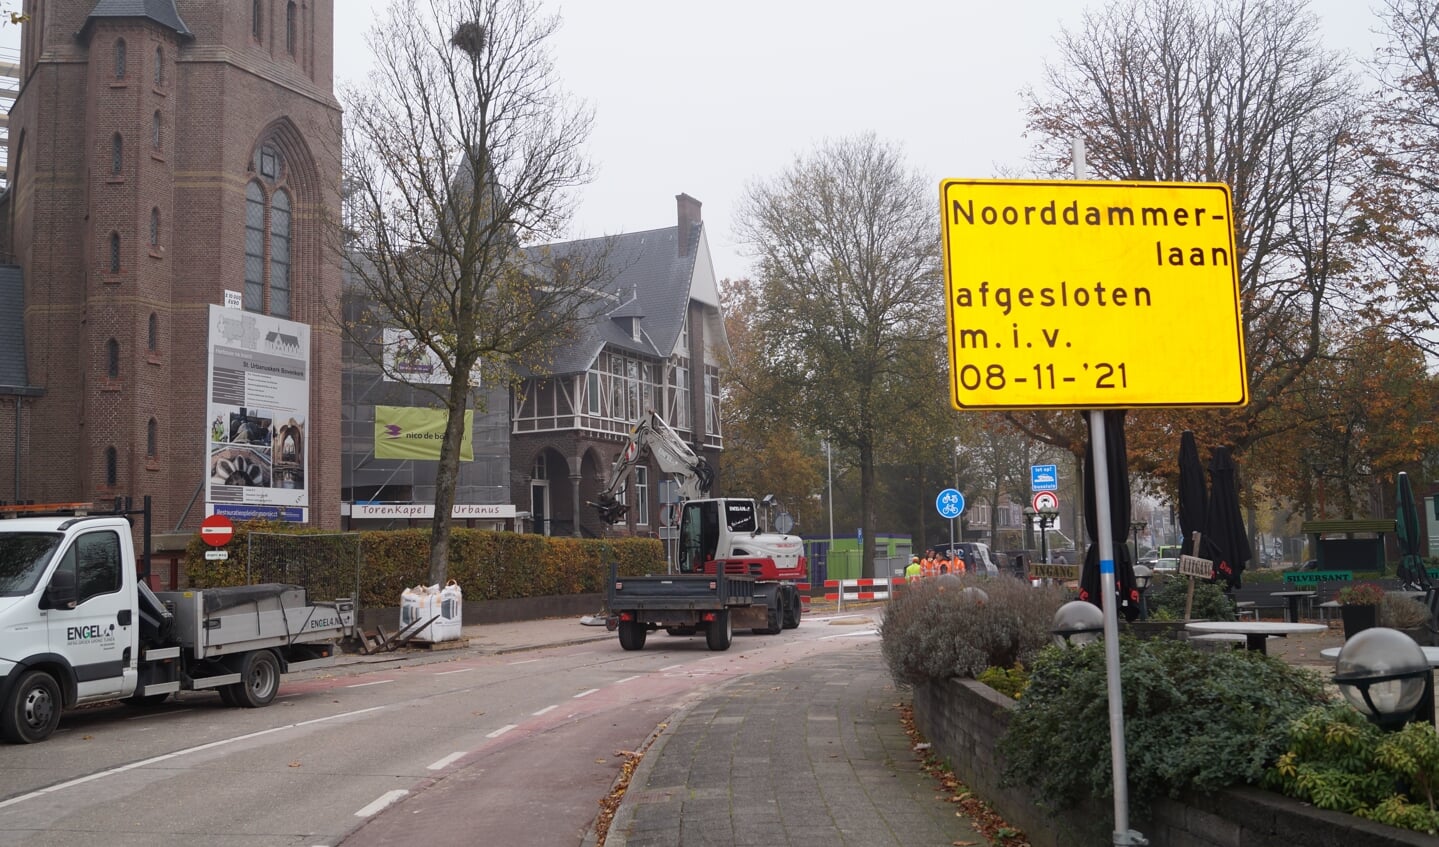 De Noorddammerlaan is sinds 8 november afgesloten voor doorgaand verkeer.